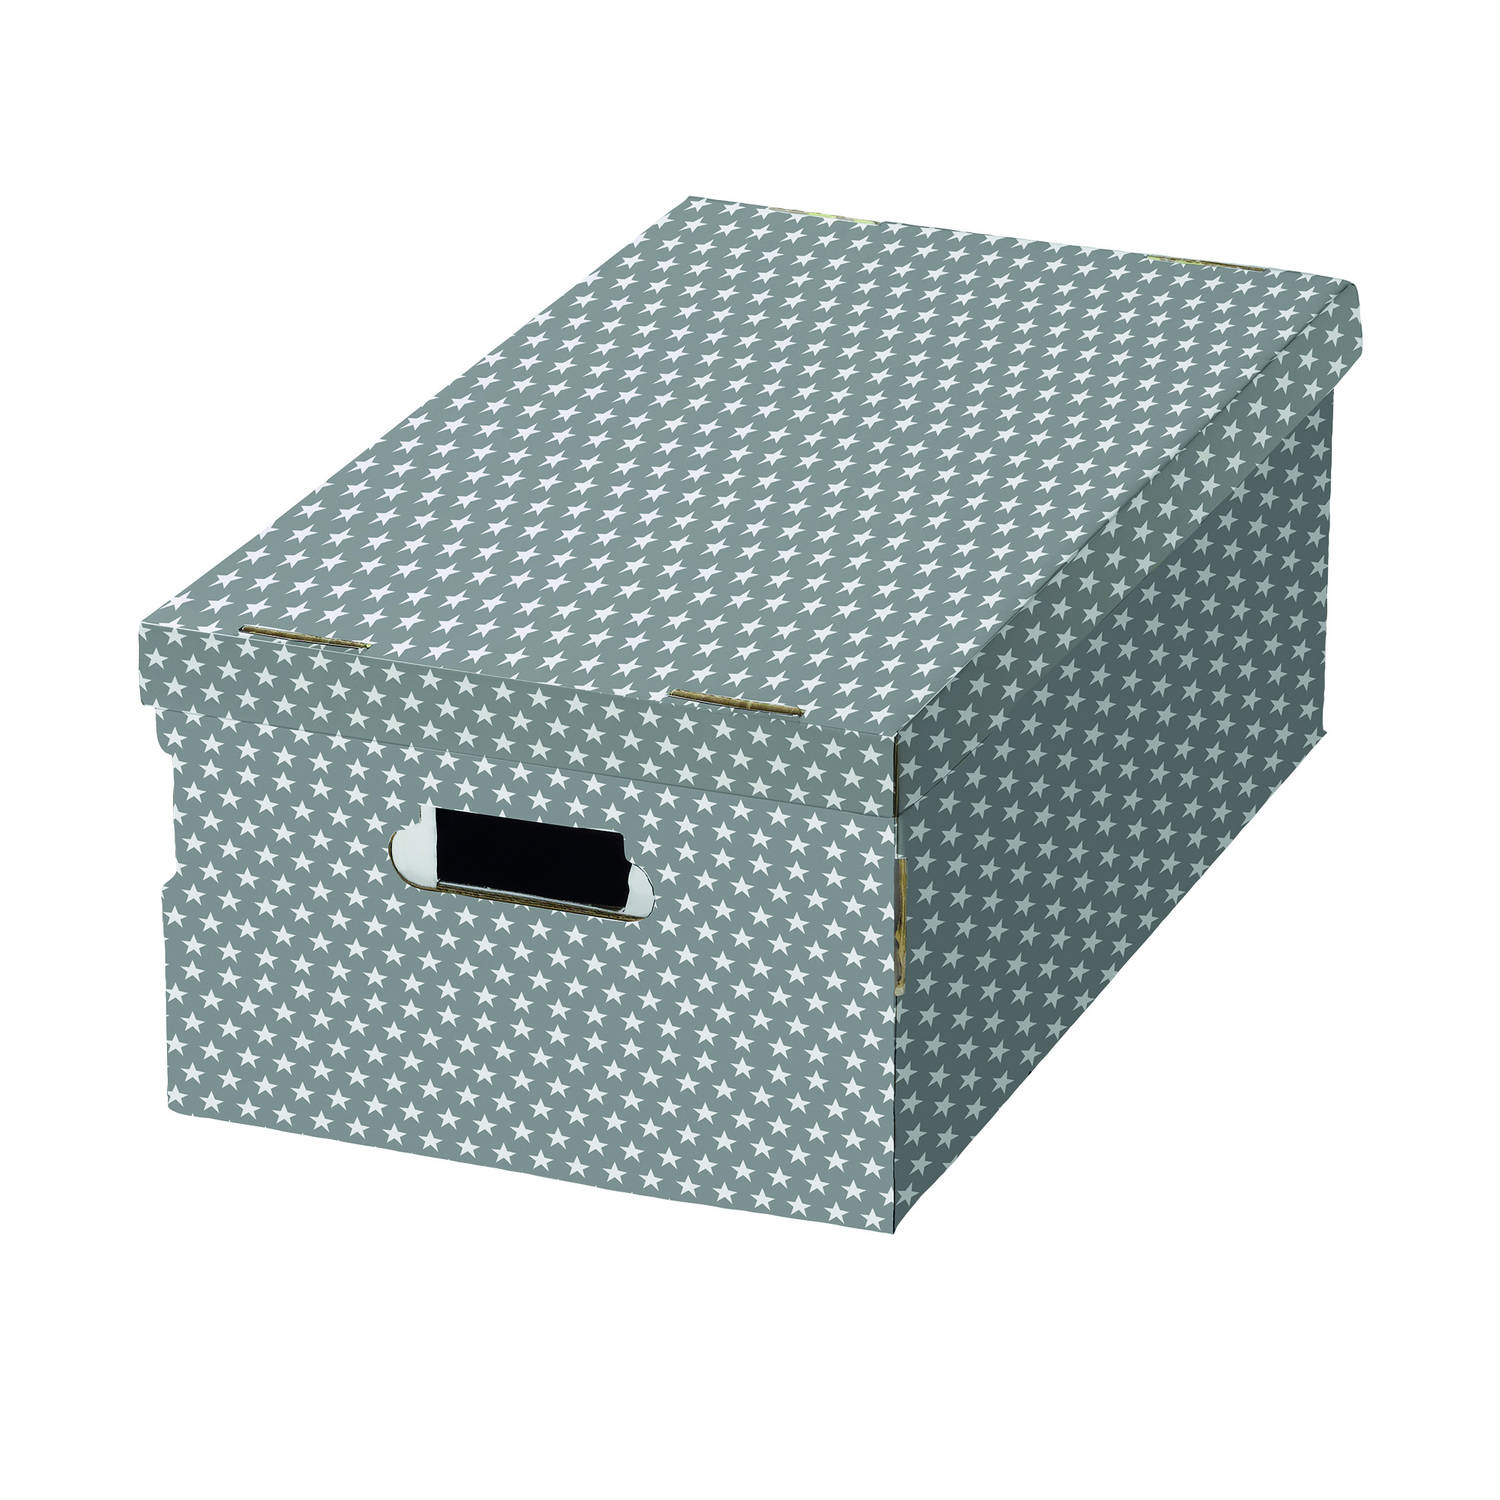 Compactor opbergdoos 59 cm karton grijs/wit stuks | Blokker